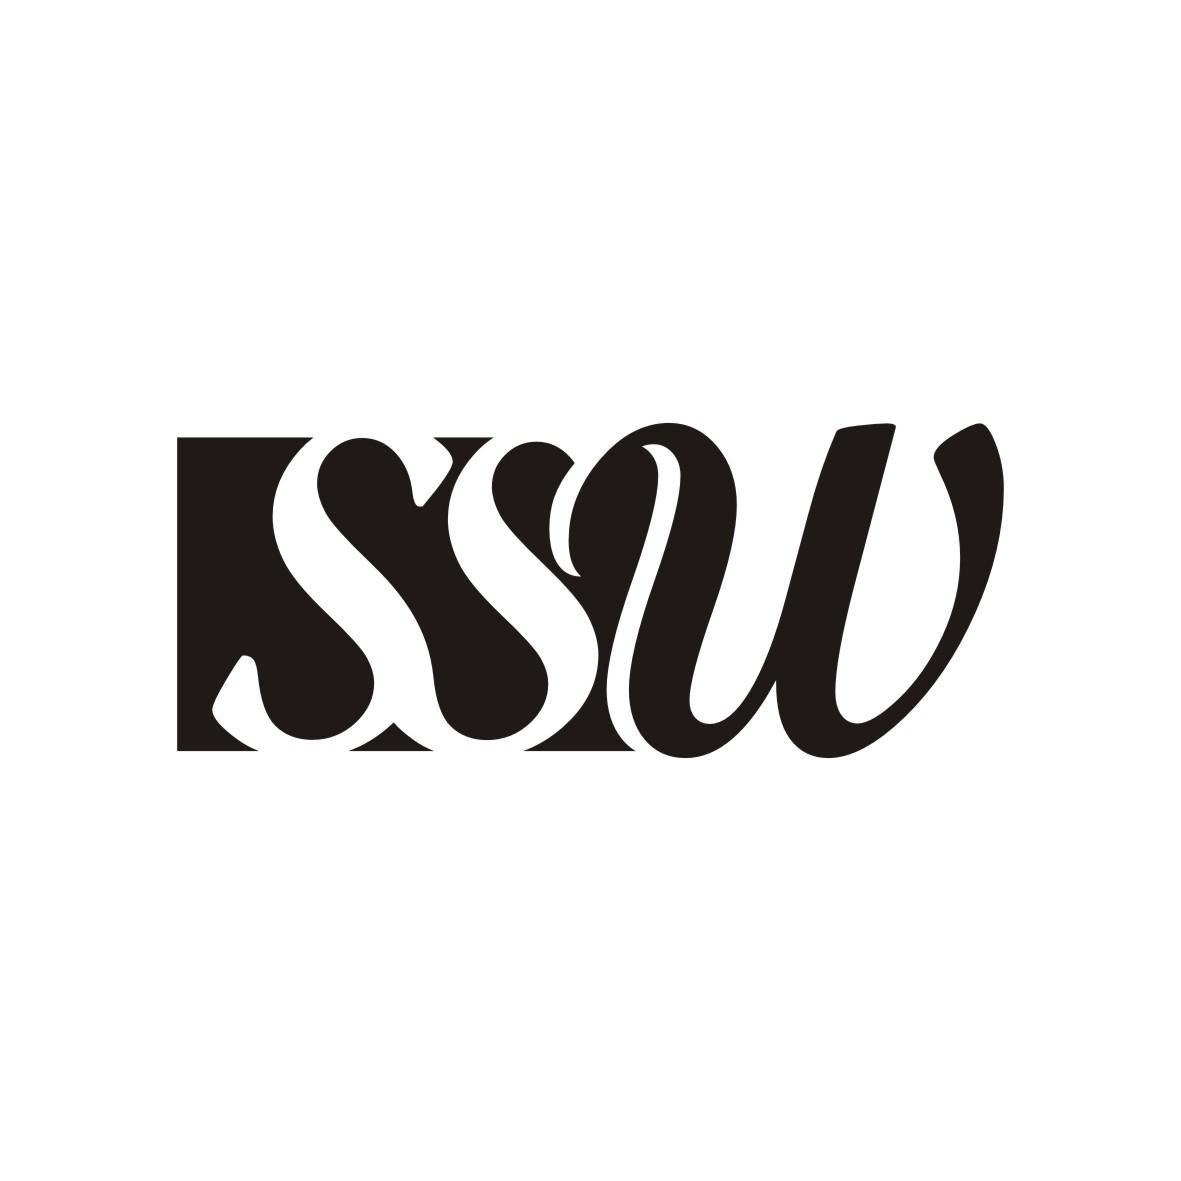 SSW